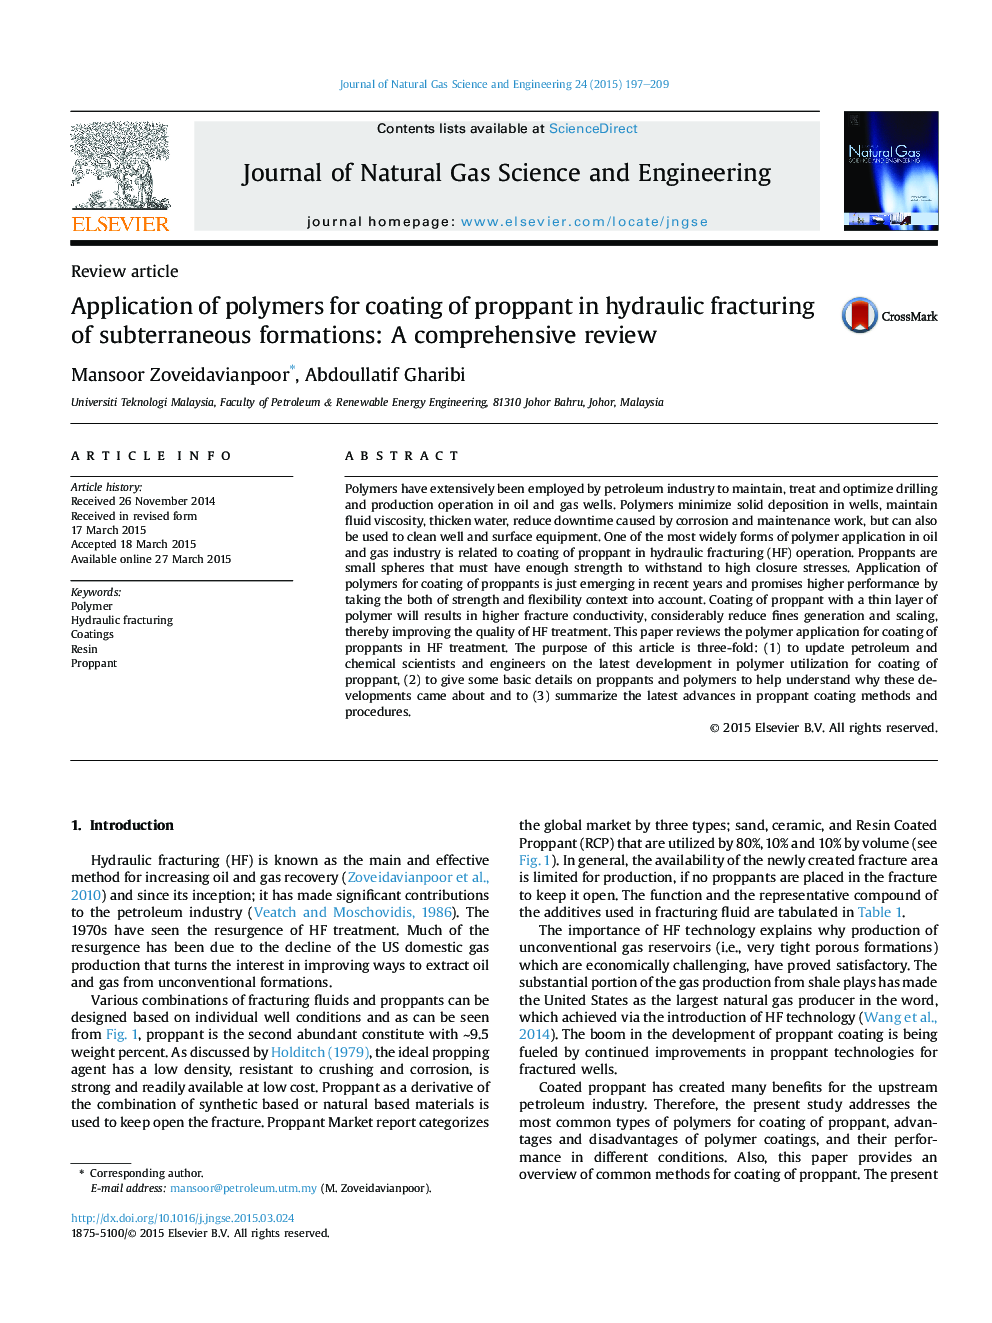 استفاده از پلیمرها برای پوشش پروپاننت در شکستگی هیدرولیکی سازه های زیرزمینی: یک بررسی جامع 